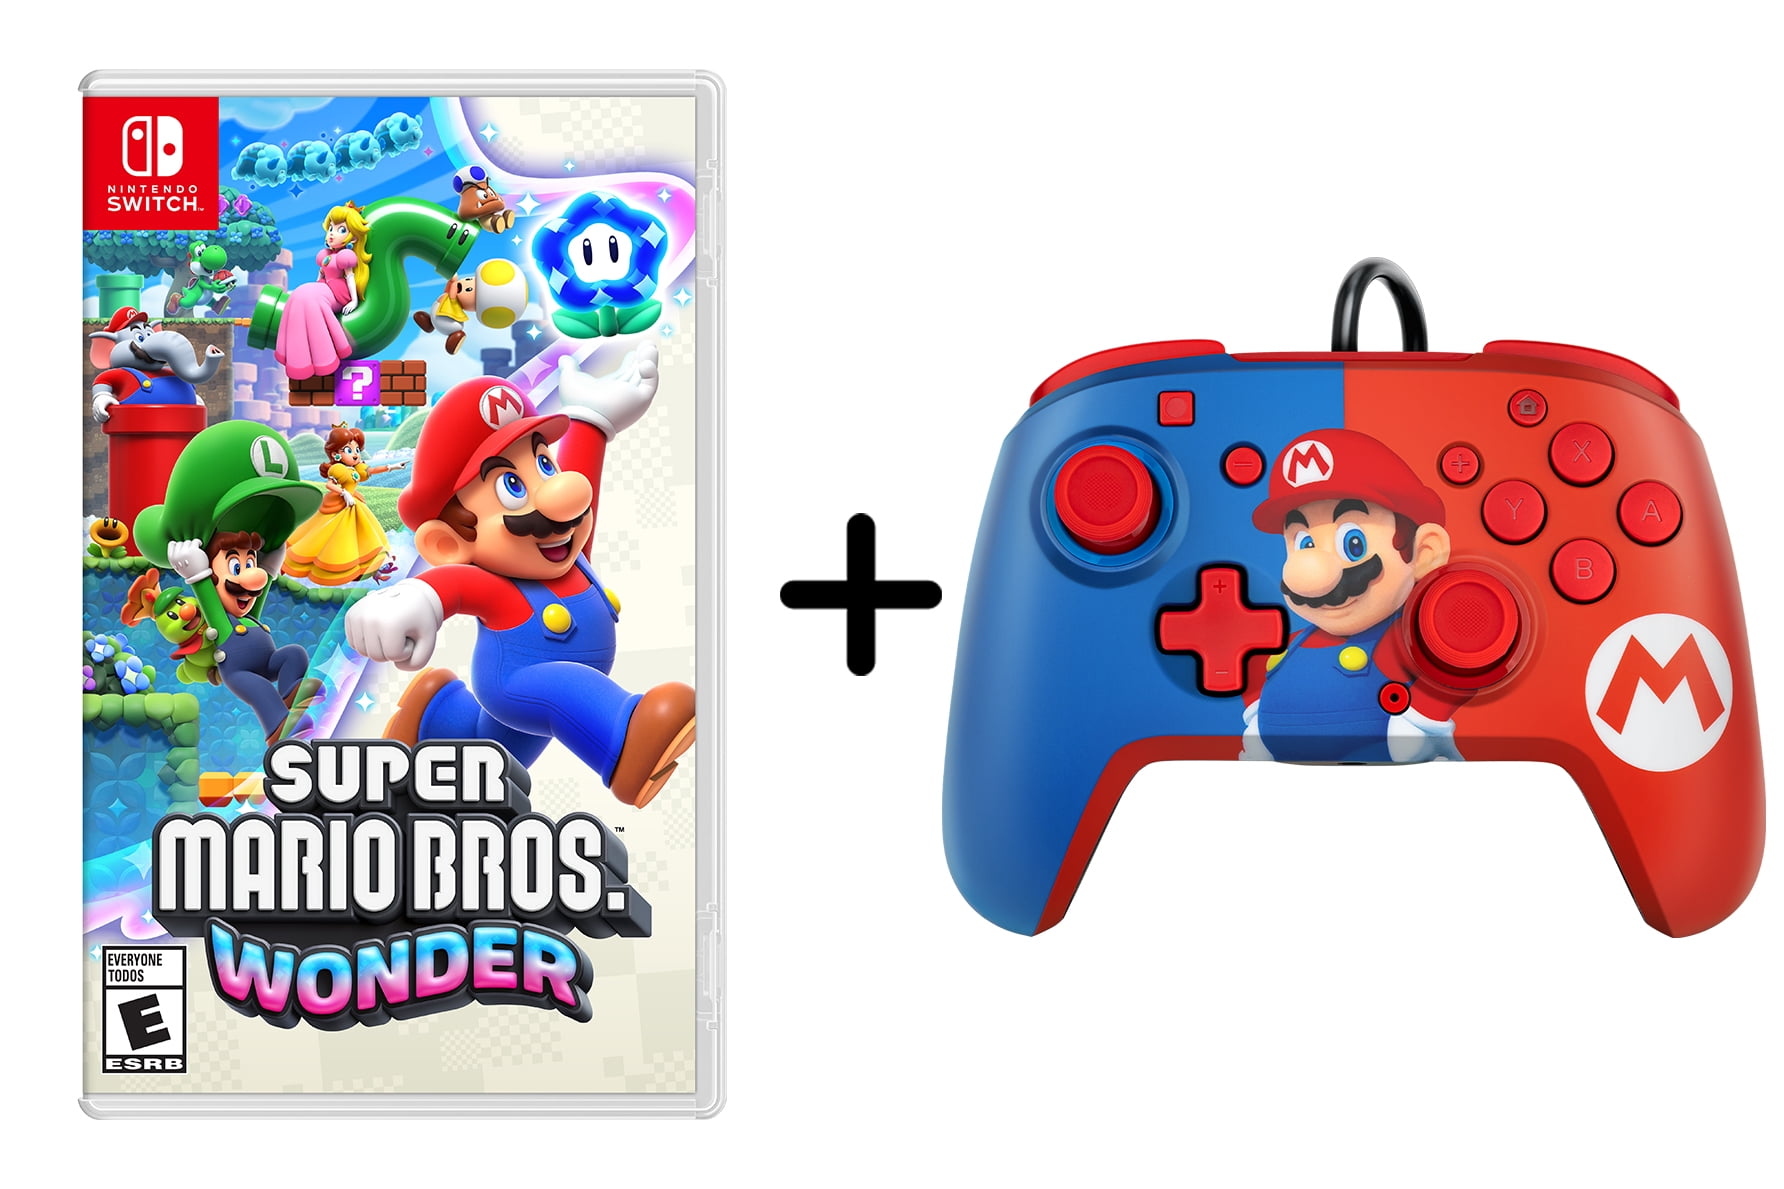  Super Mario Bros. Wonder : Standard - Nintendo Switch